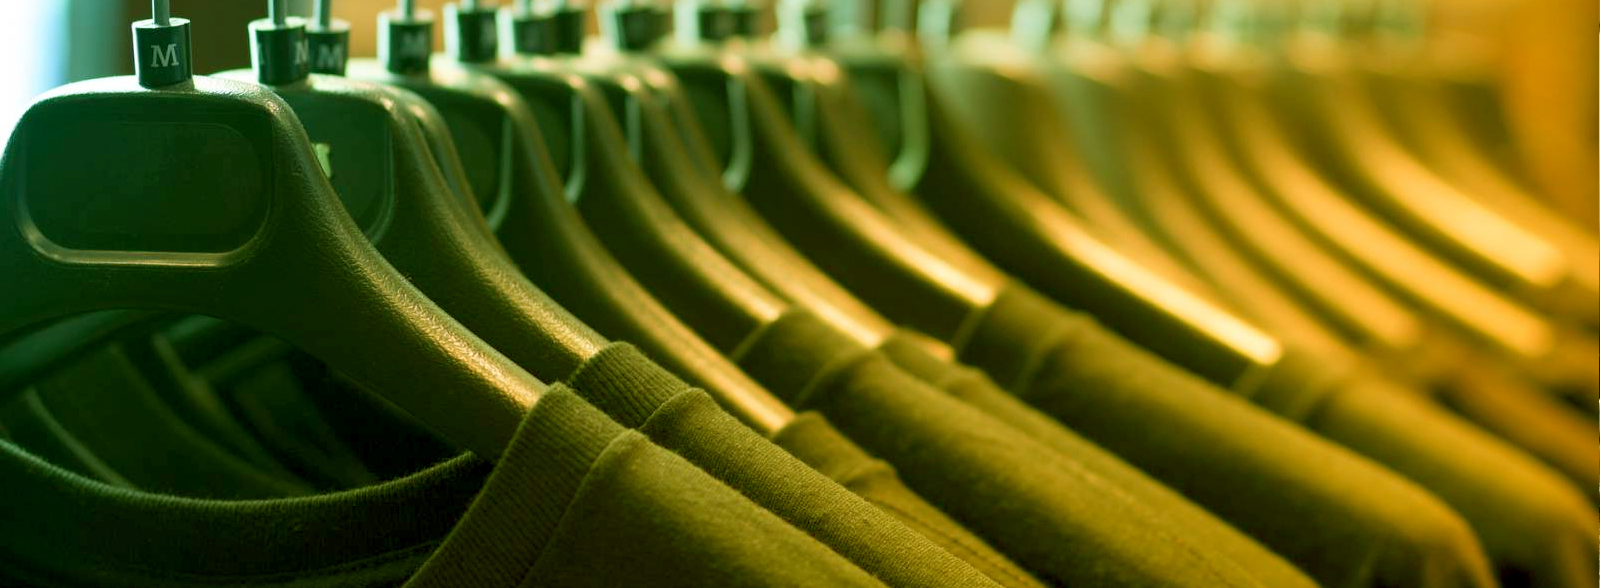 Les magasins éthiques et soucieux de l'environnement : le textile bio